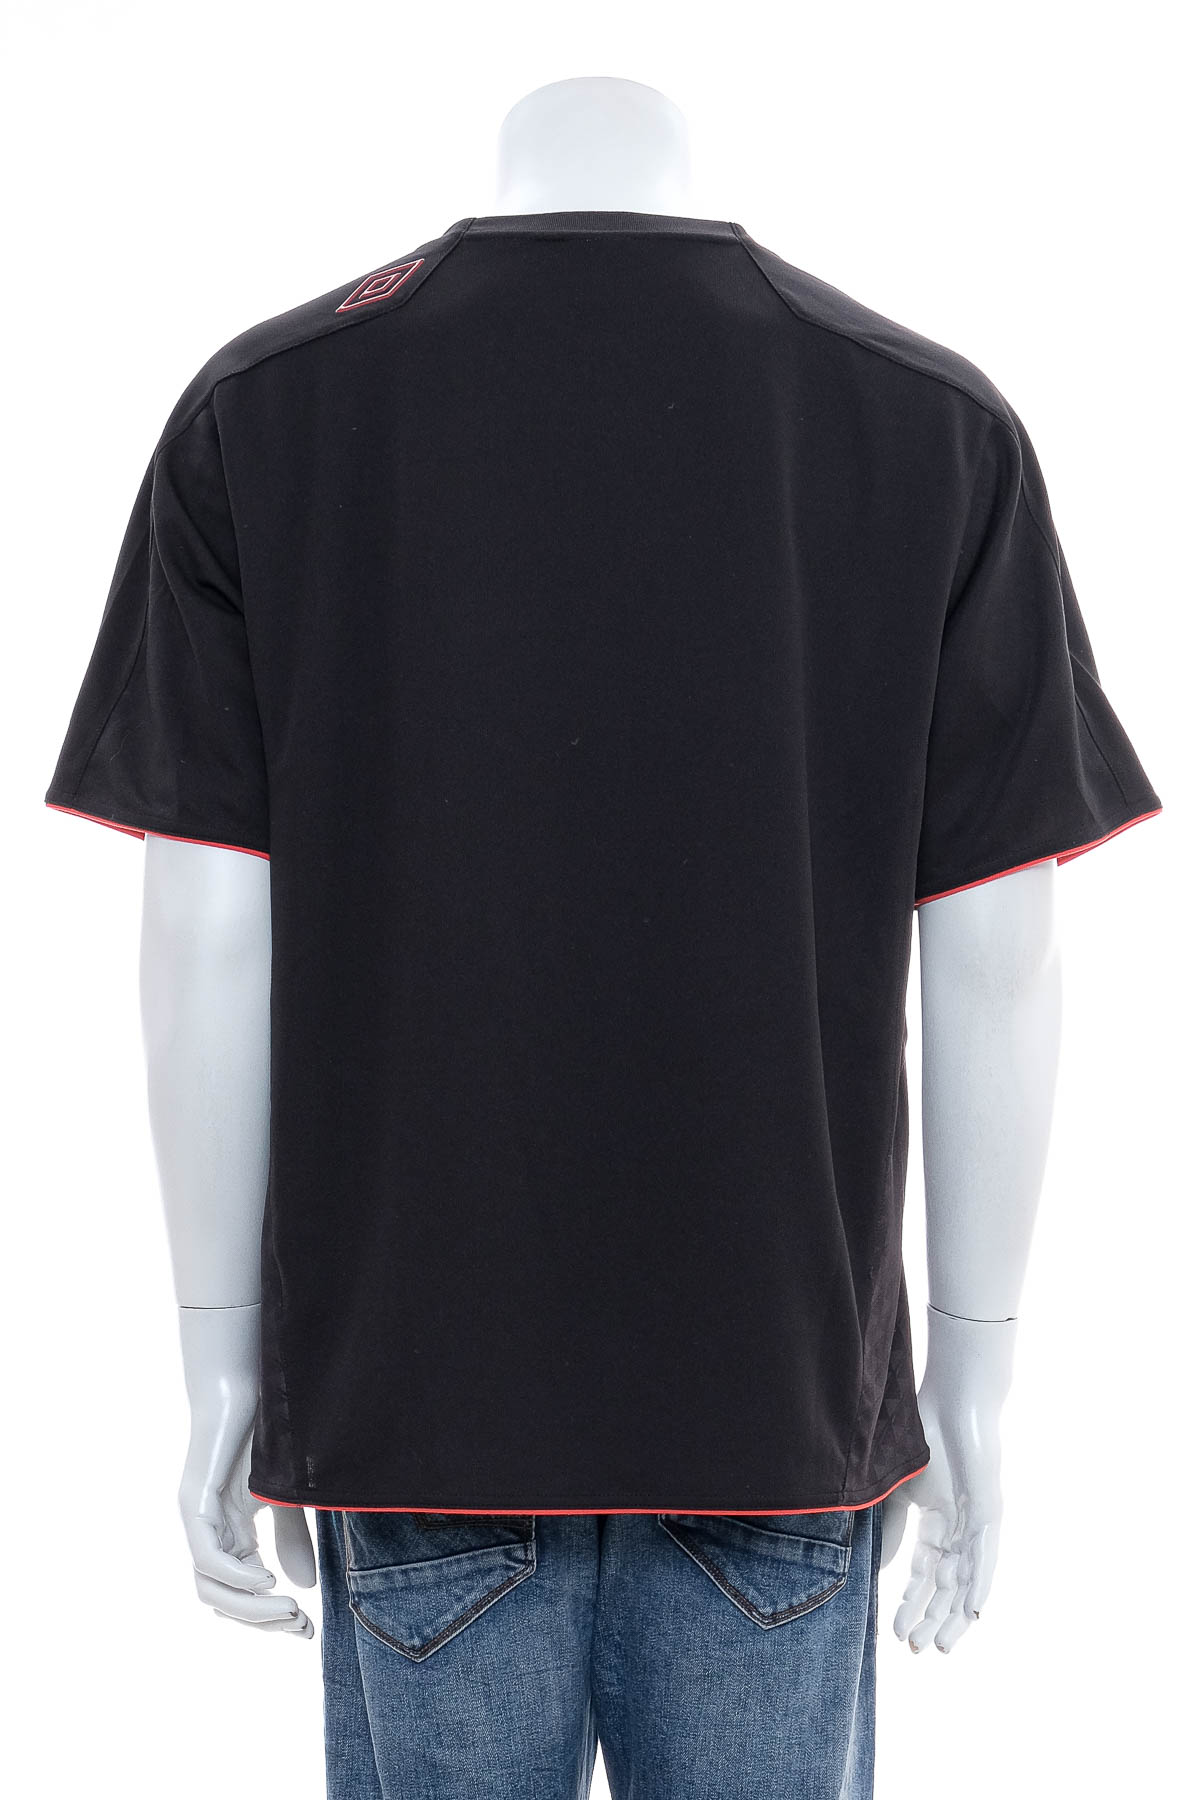 Ανδρικό μπλουζάκι - Umbro - 1